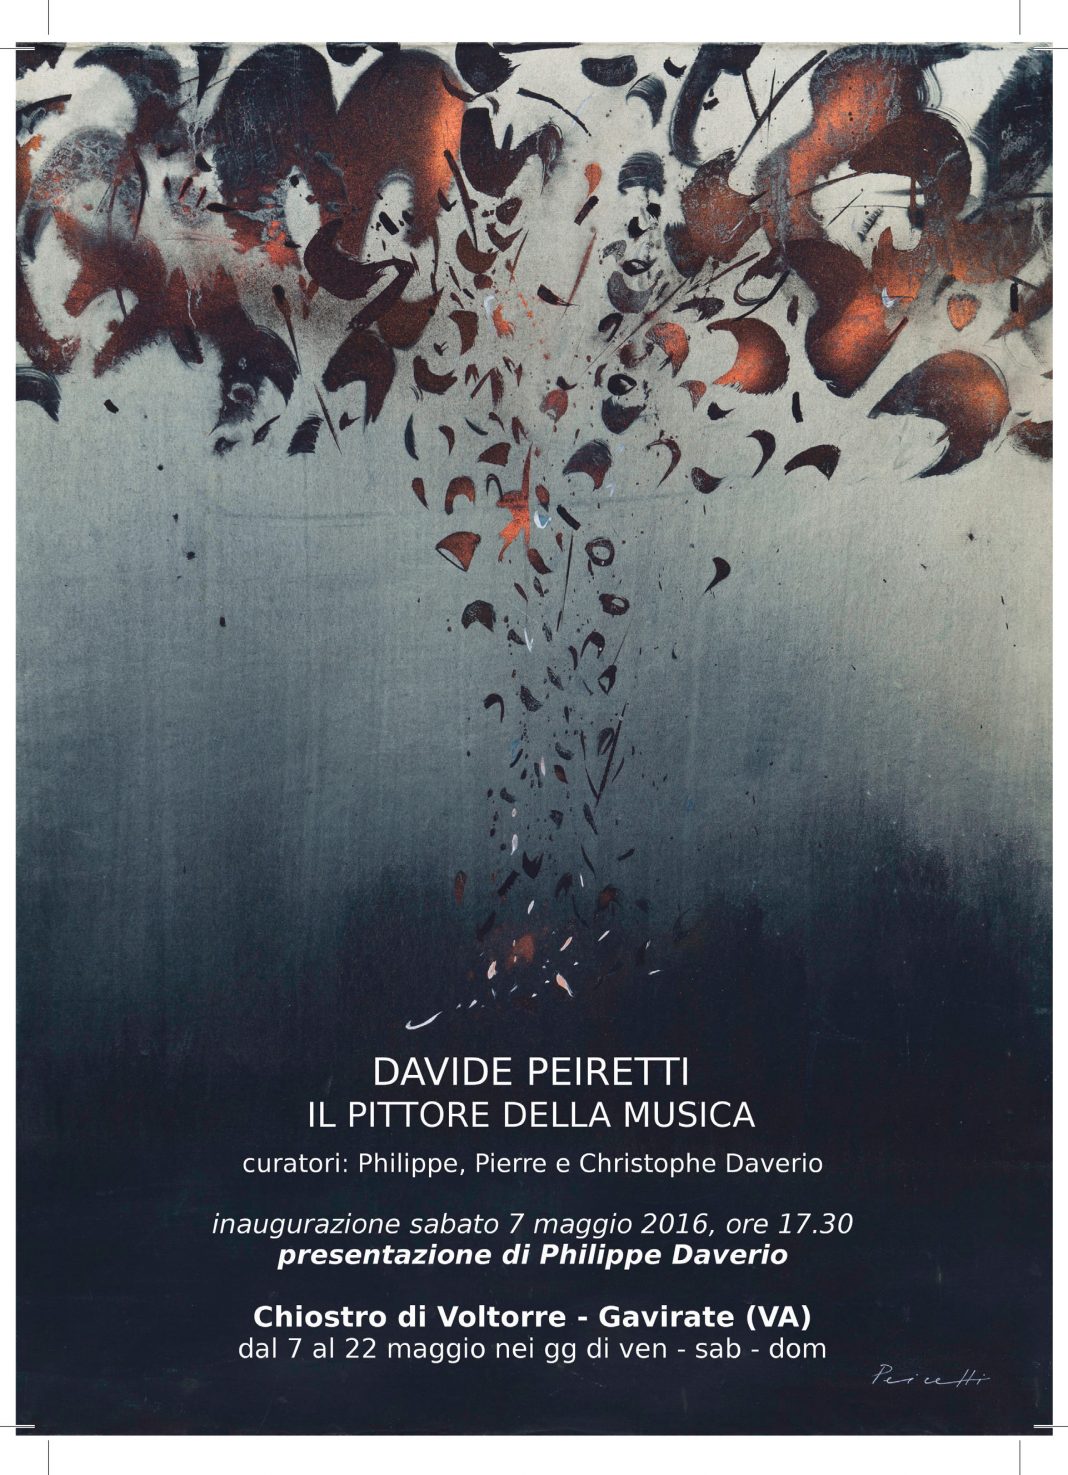 Davide Peiretti – Il pittore della Musicahttps://www.exibart.com/repository/media/eventi/2016/05/davide-peiretti-8211-il-pittore-della-musica-1068x1475.jpg